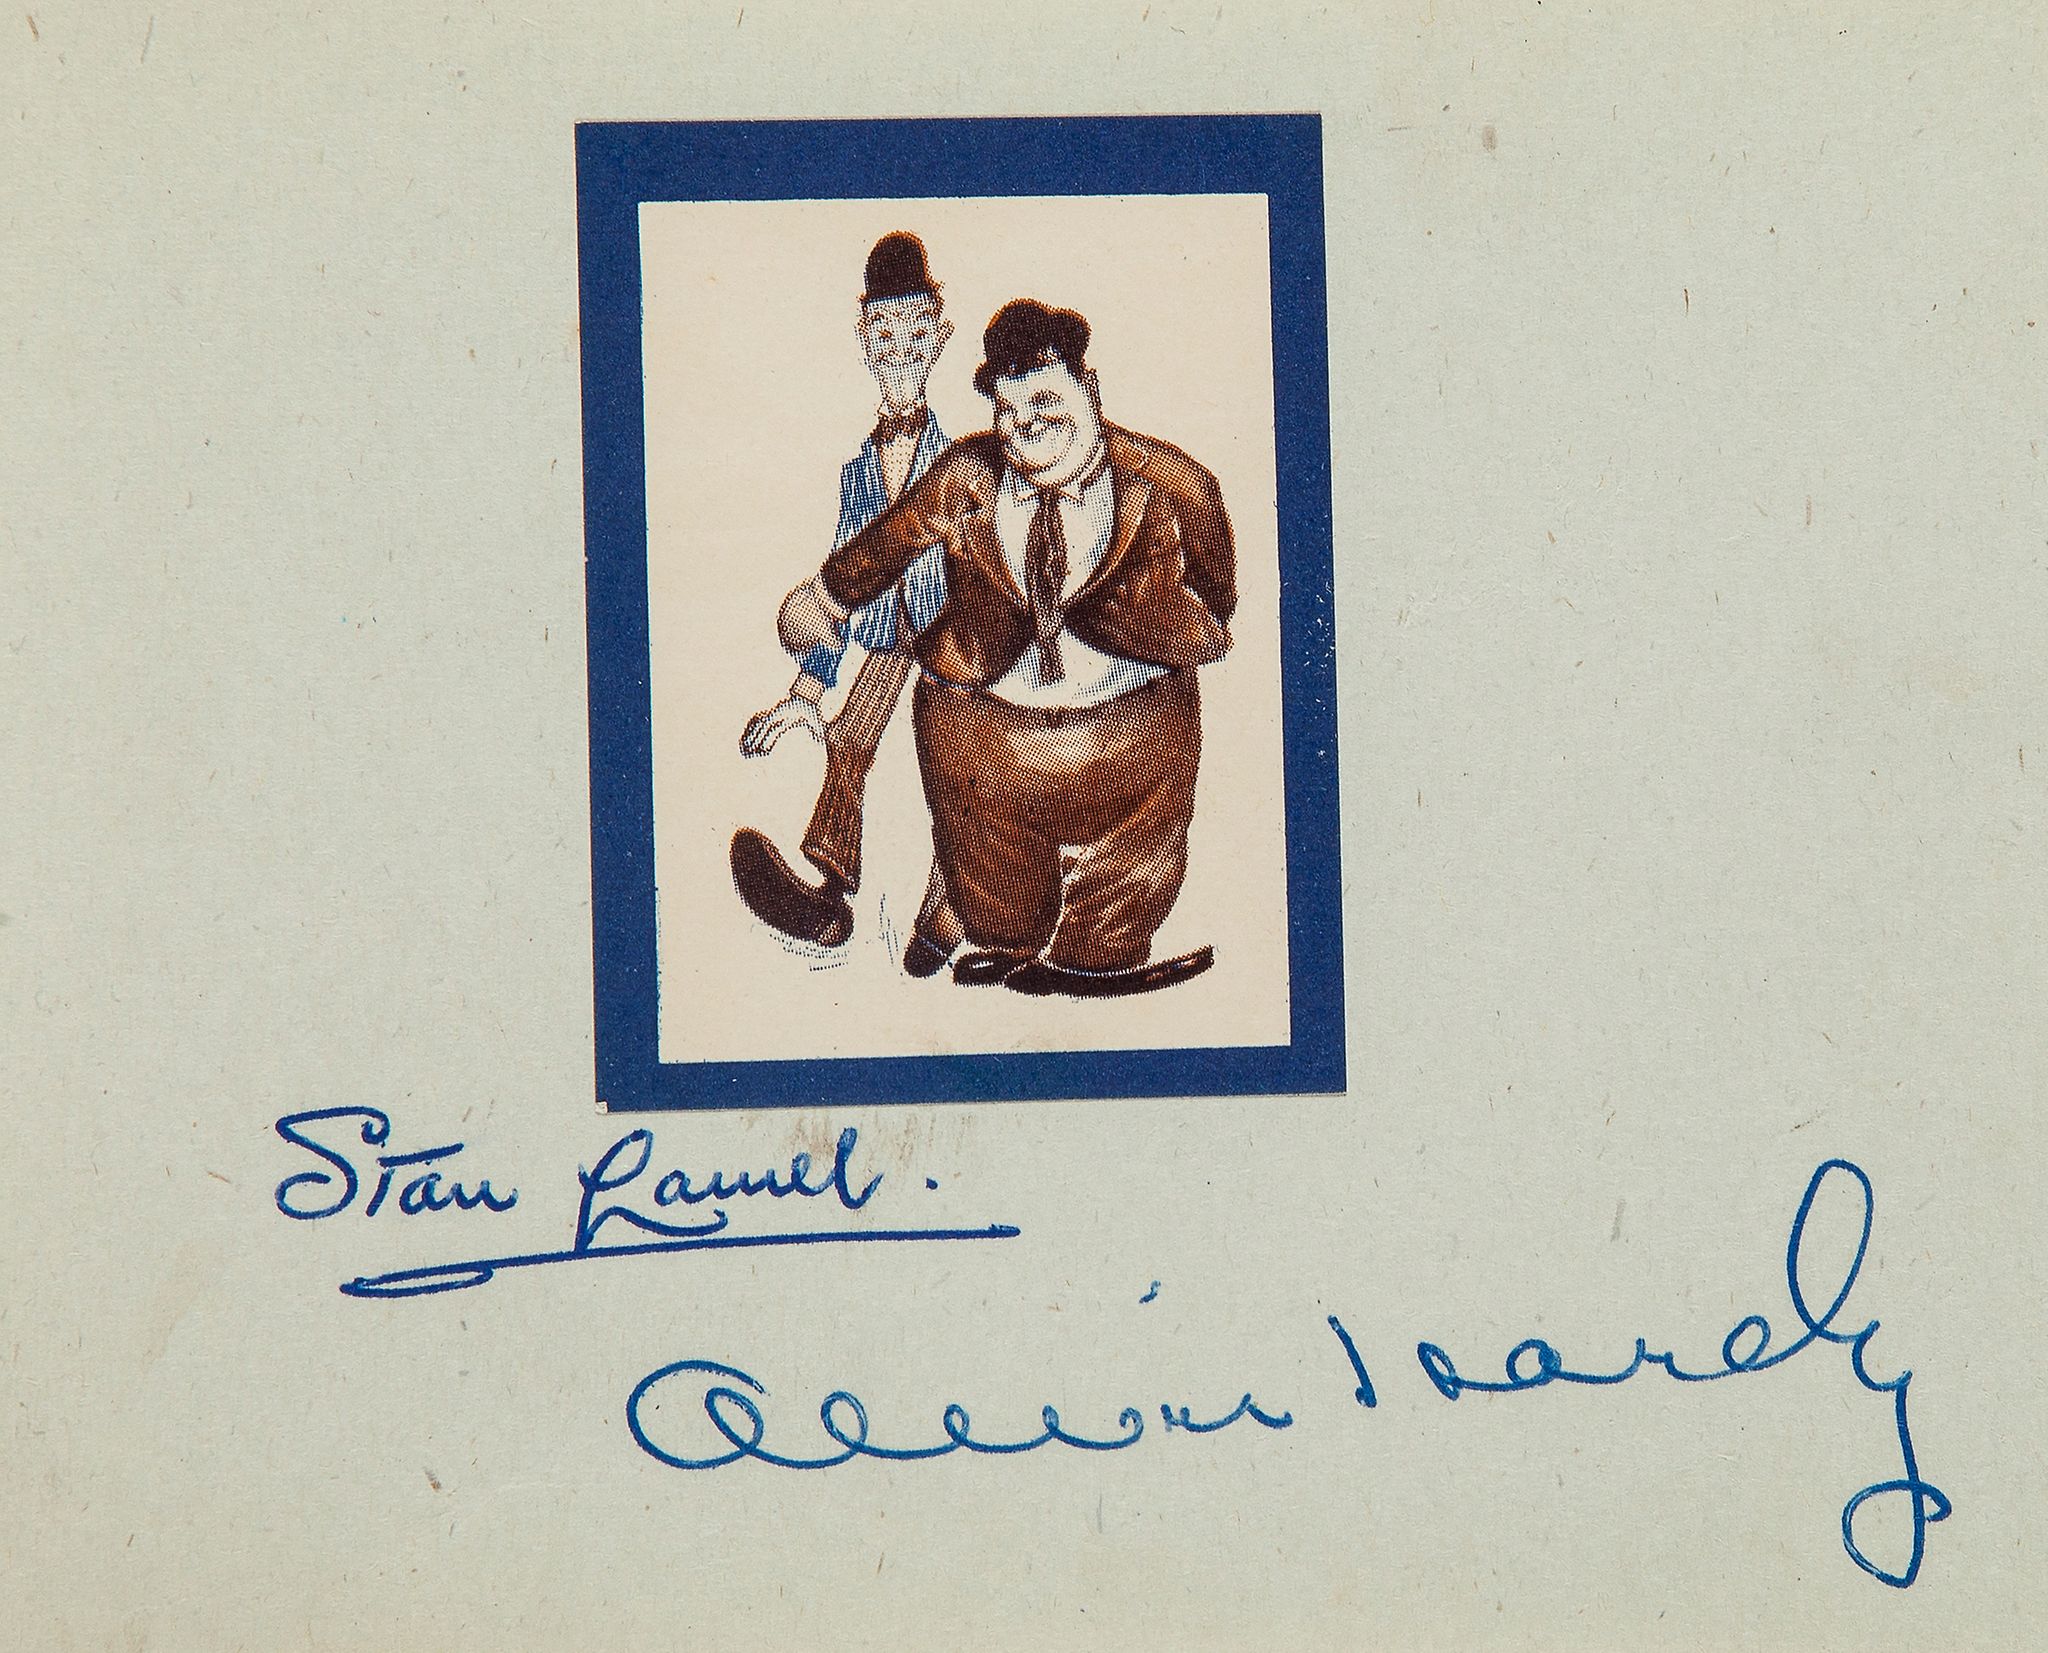 AUTOGRAPH ALBUM INCL LAUREL & HARDY - Autograph album with signatures by Stan Laurel, Oliver Hardy